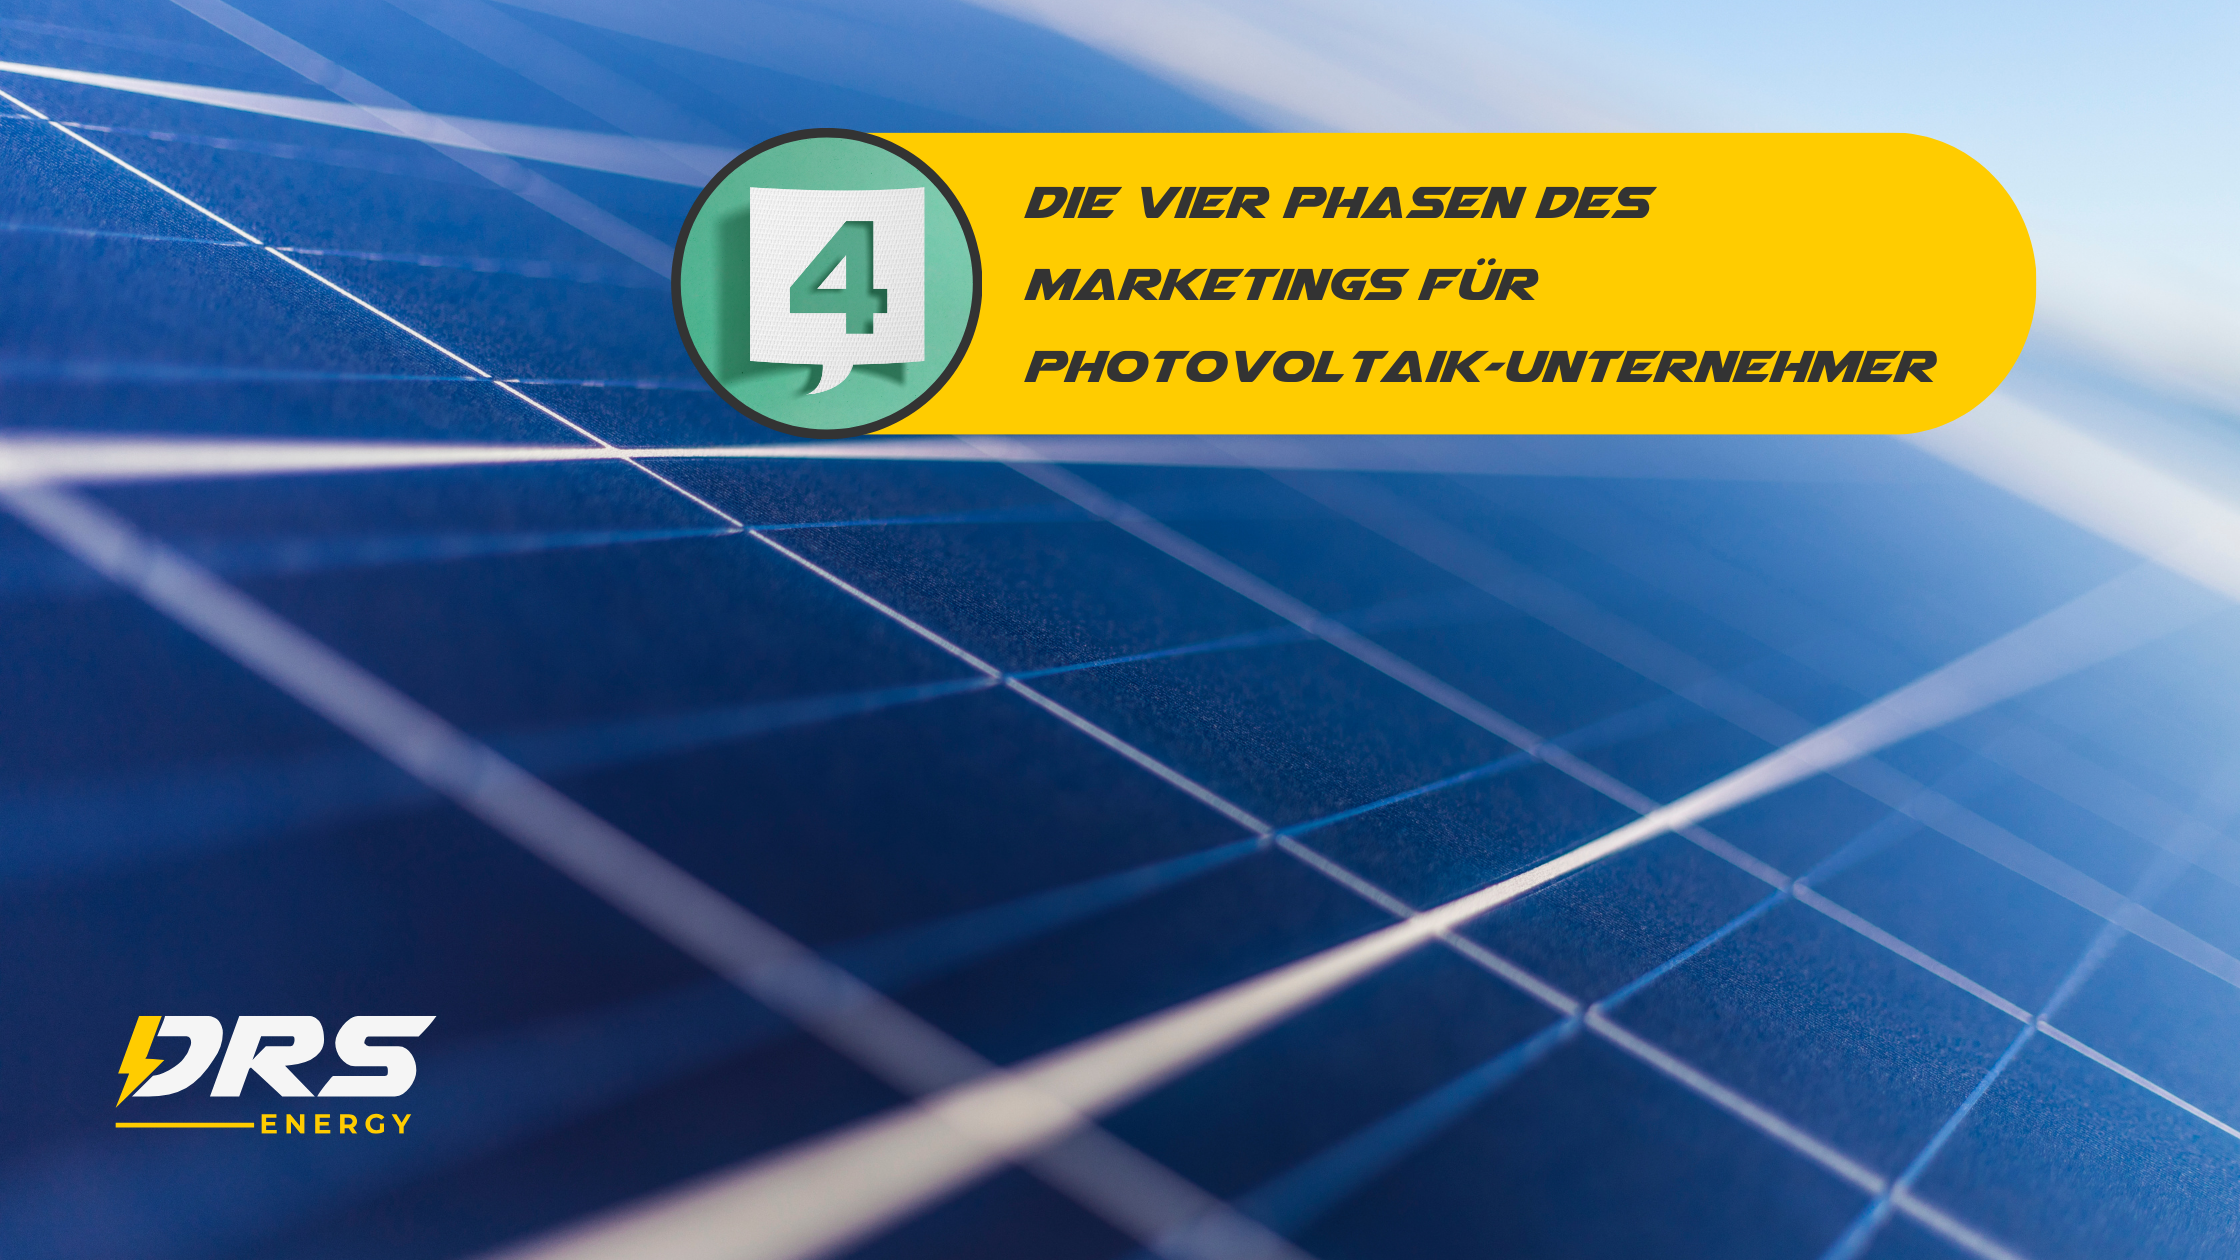 Die Vier Phasen des Marketings für Photovoltaik-Unternehmer